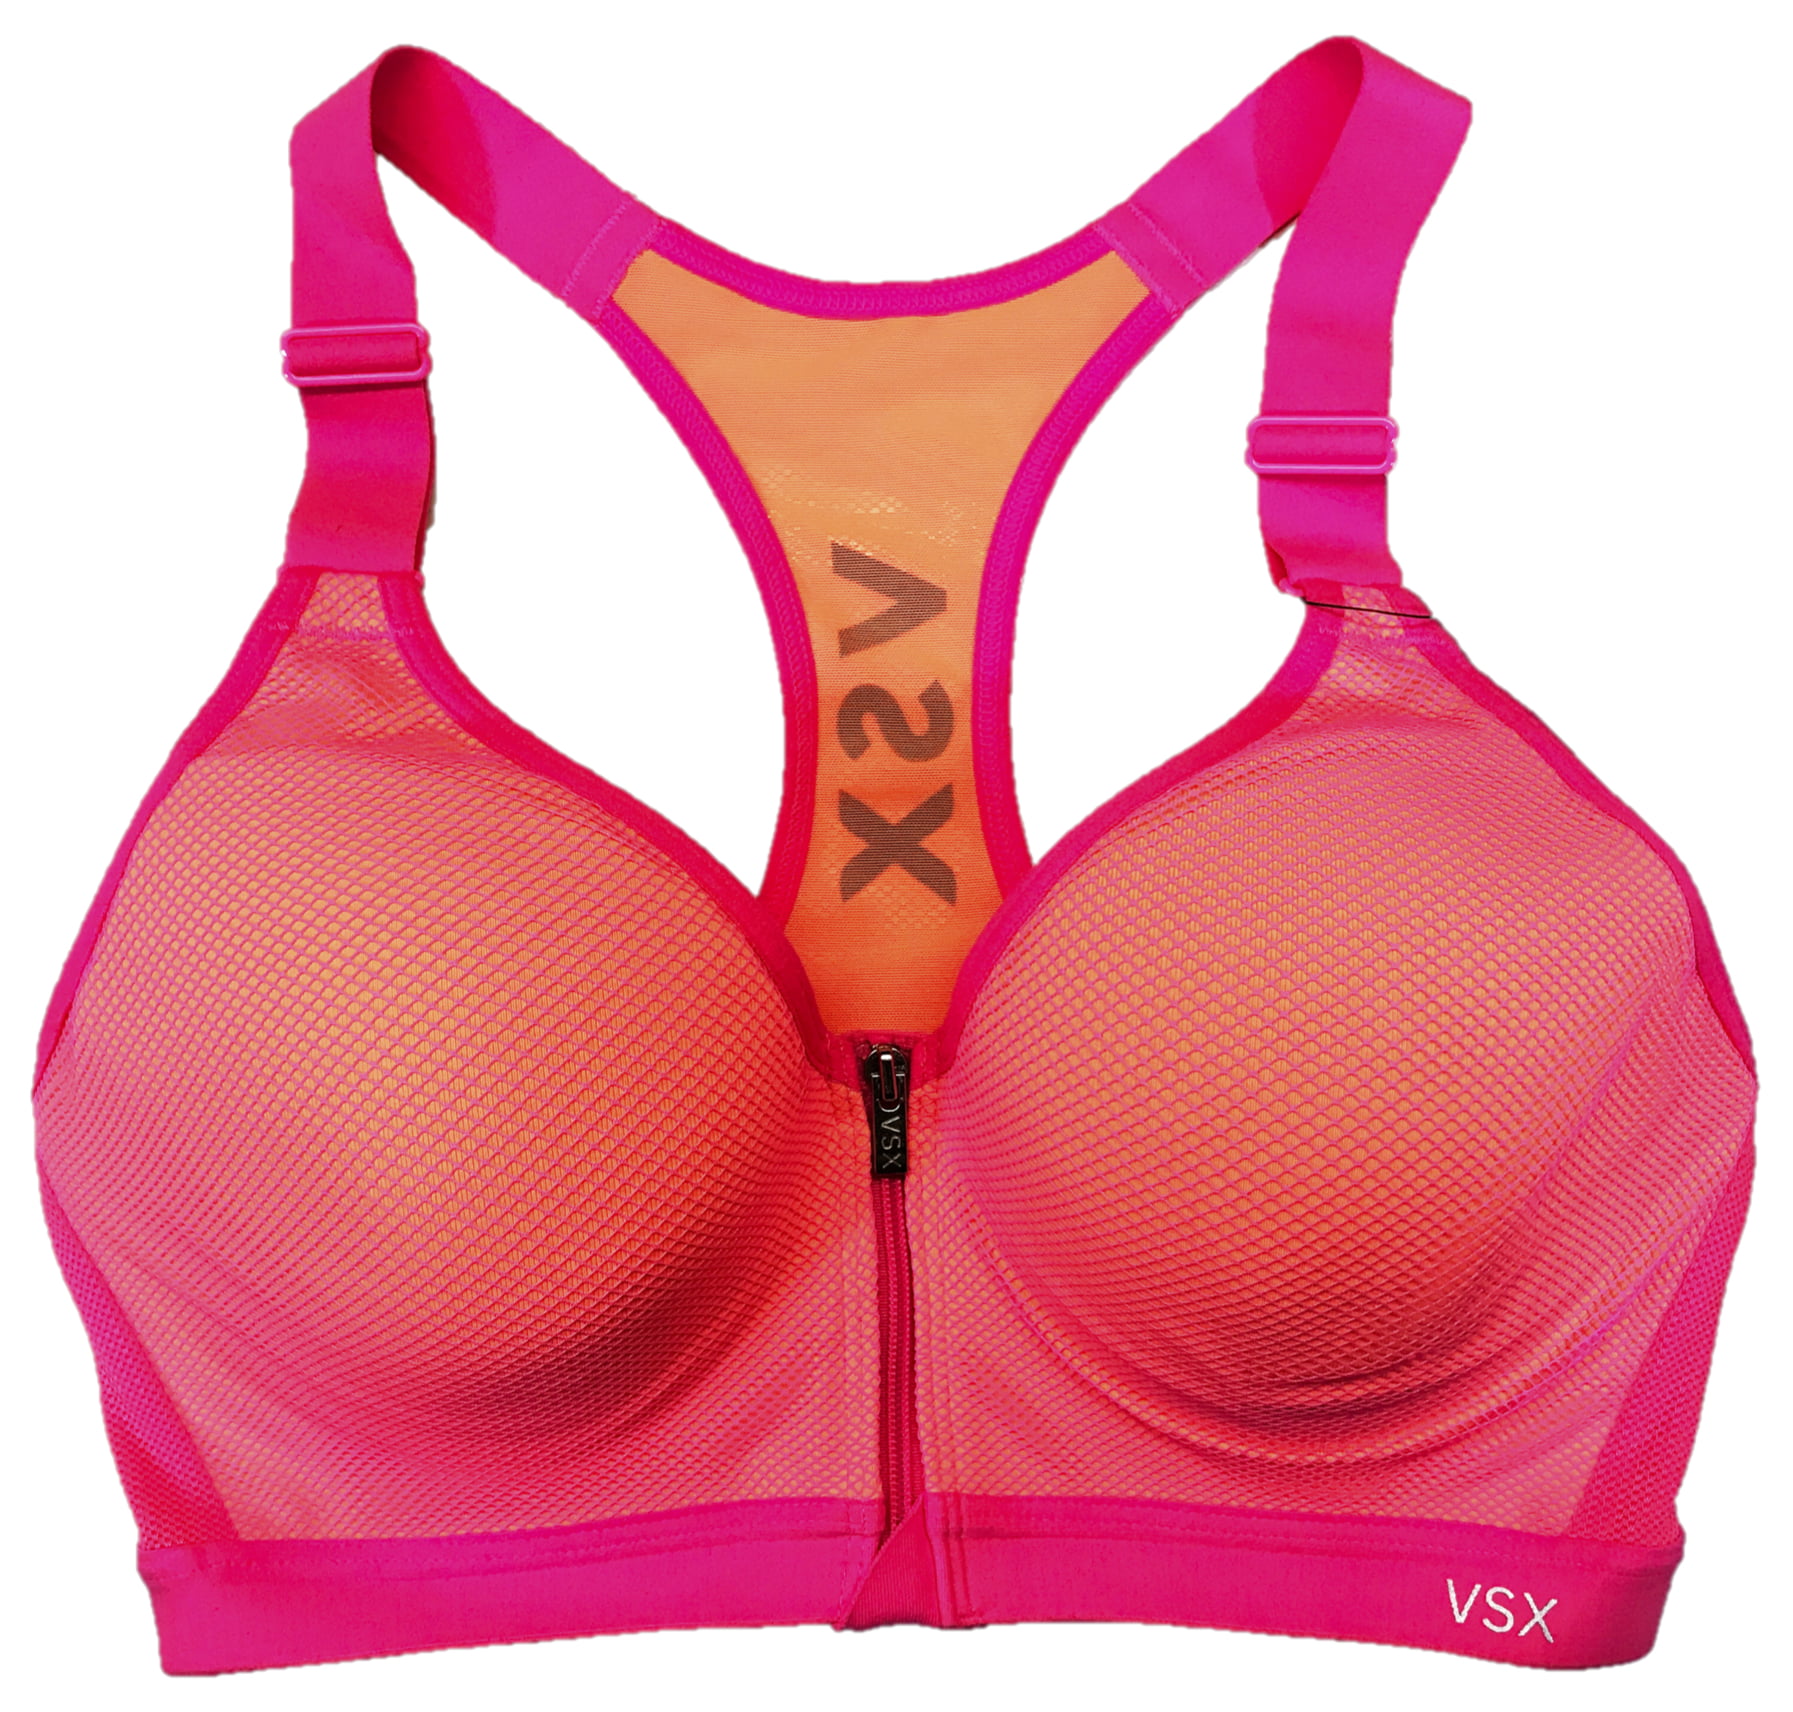 VSX Victorias Secret Sports Bra Zip Front Underwire Support Gray/Black Size  32DD